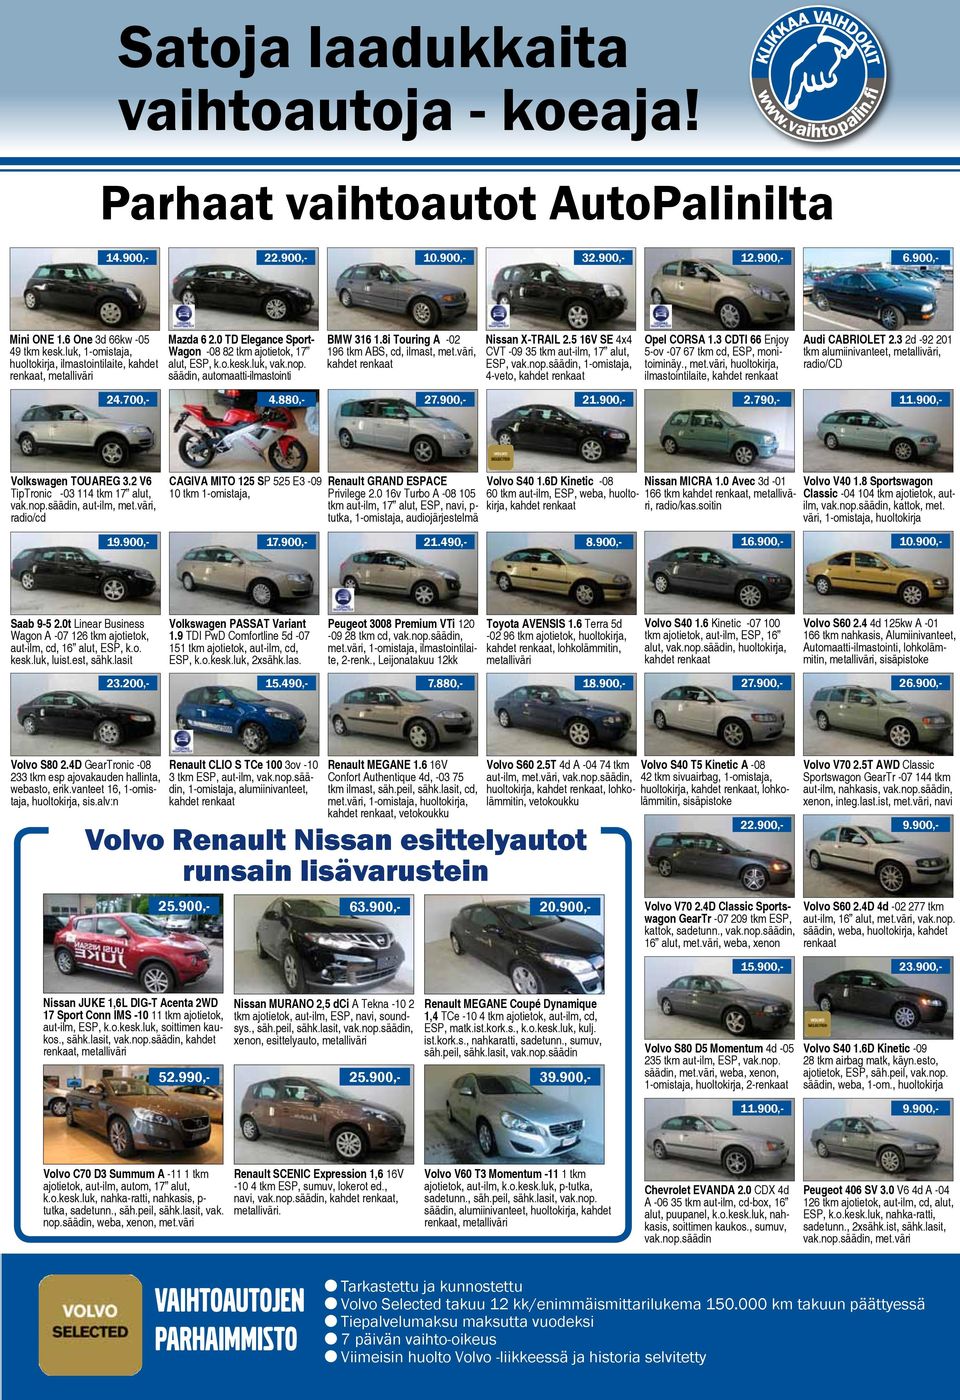 8i Touring A -02 196 tkm ABS, cd, ilmast, met.väri, Nissan X-TRAIL 2.5 16V SE 4x4 CVT -09 35 tkm aut-ilm, 17 alut, ESP, vak.nop.säädin, 1-omistaja, 4-veto, Opel CORSA 1.